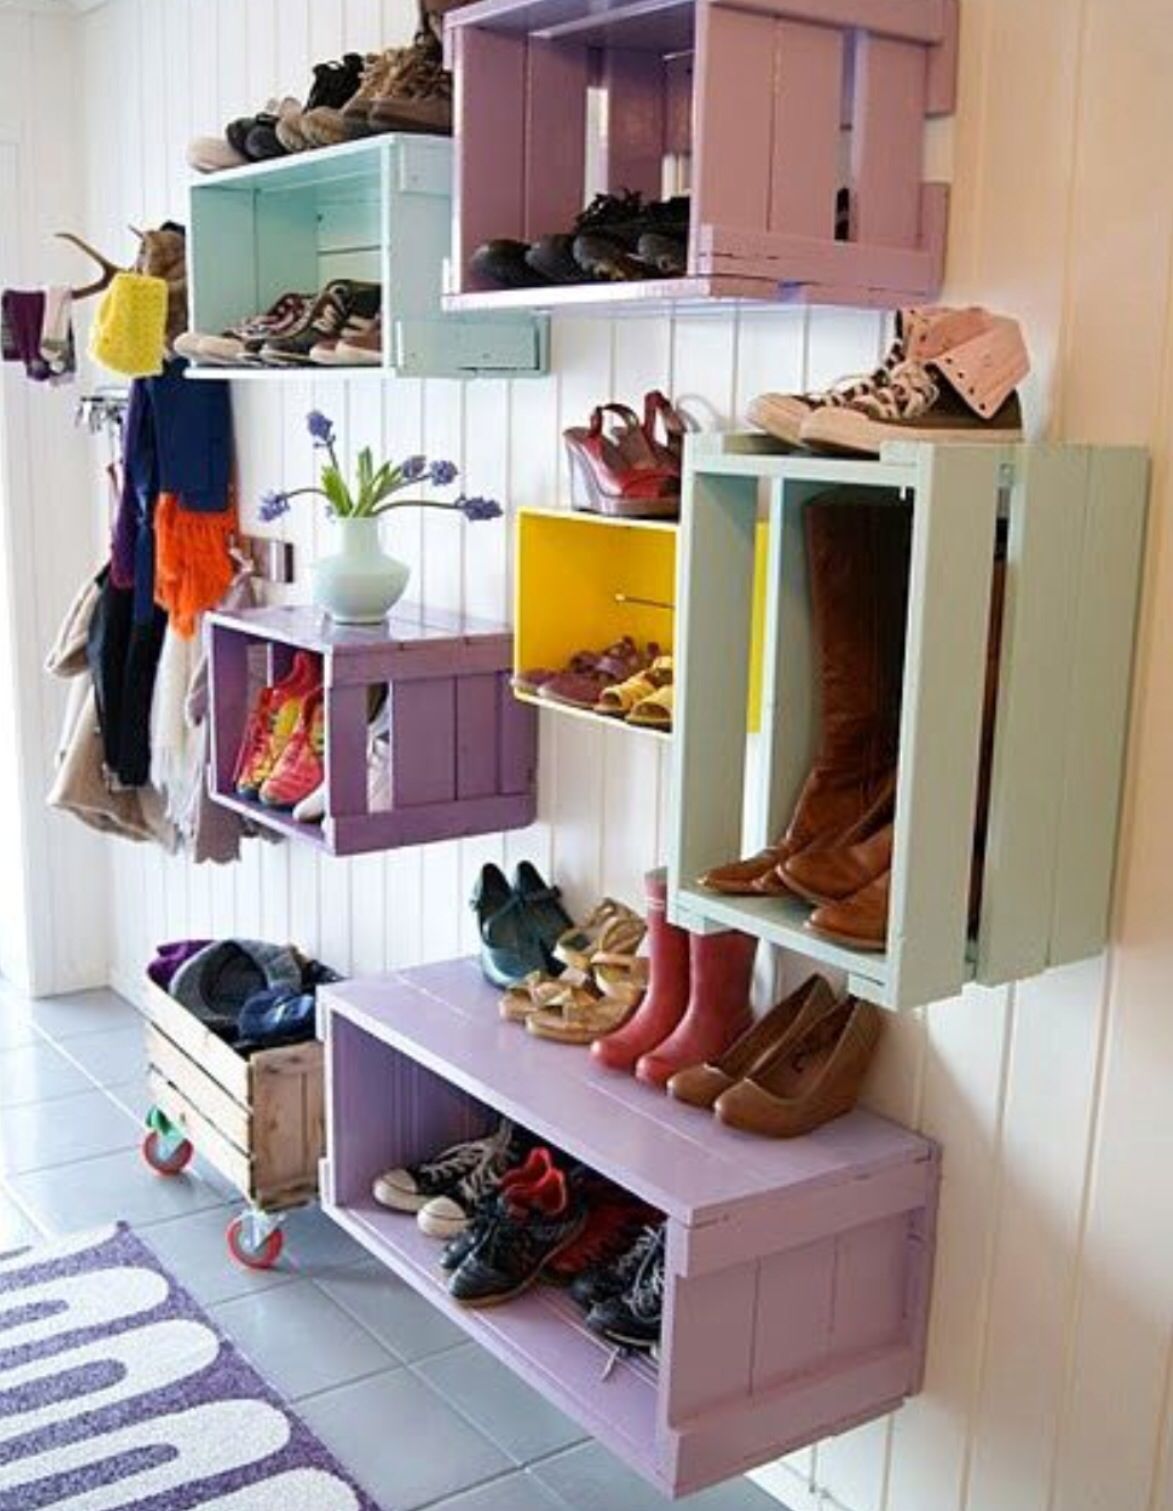 6 cách lưu trữ giày dép cực hay giúp nhà luôn gọn gàng - Ảnh 4.